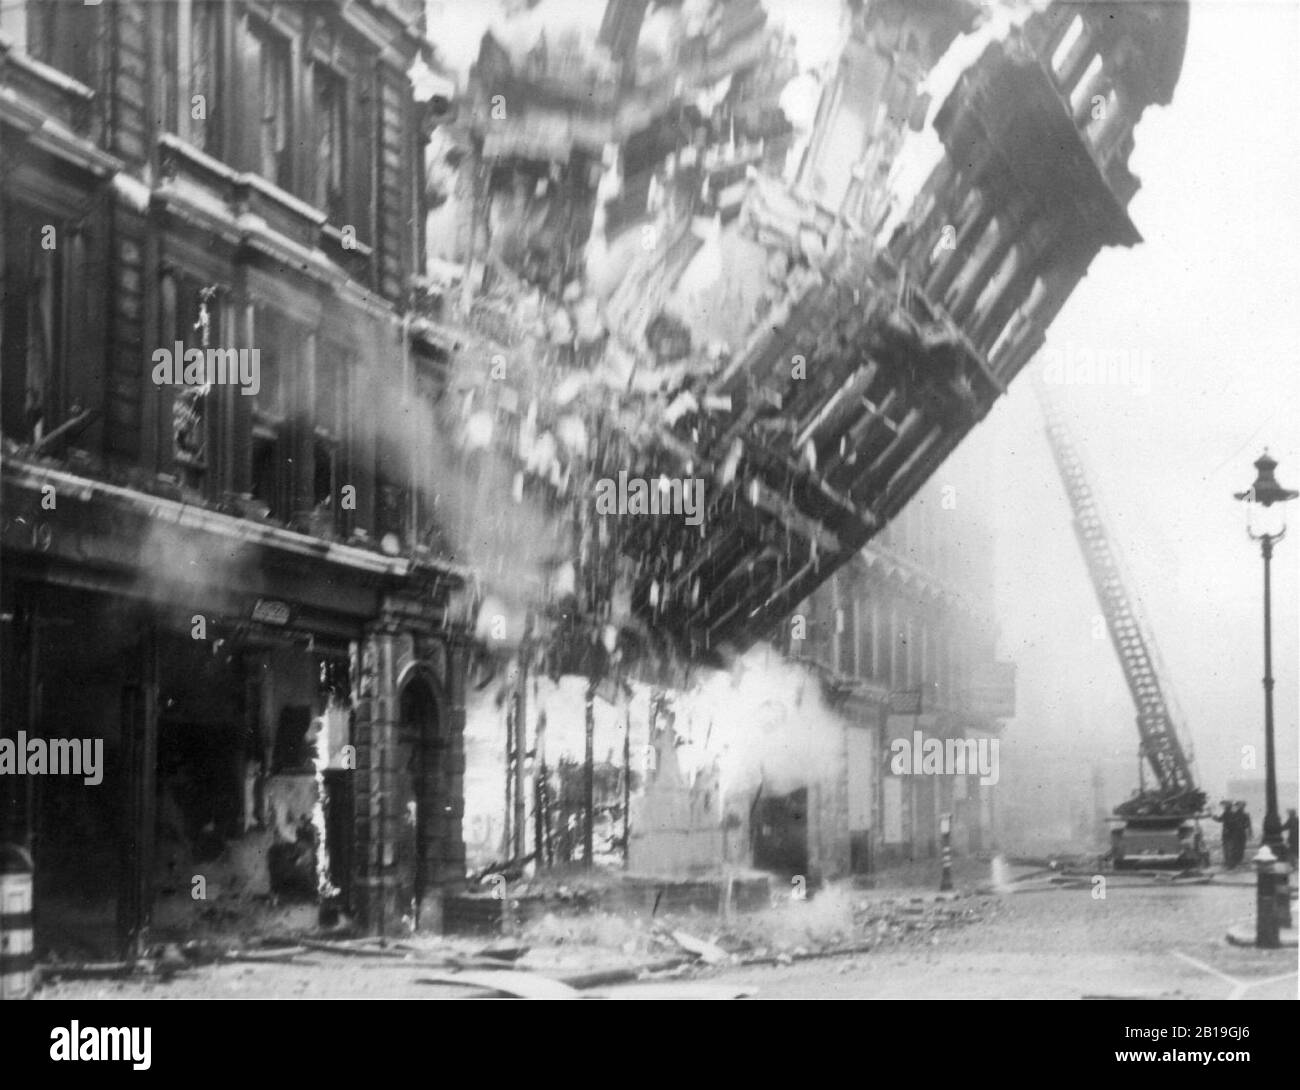 Londres,blitz,bombardement allemand,Grande-Bretagne,deuxième guerre mondiale,offensive aérienne de masse,raid,Bataille de Grande-Bretagne Banque D'Images